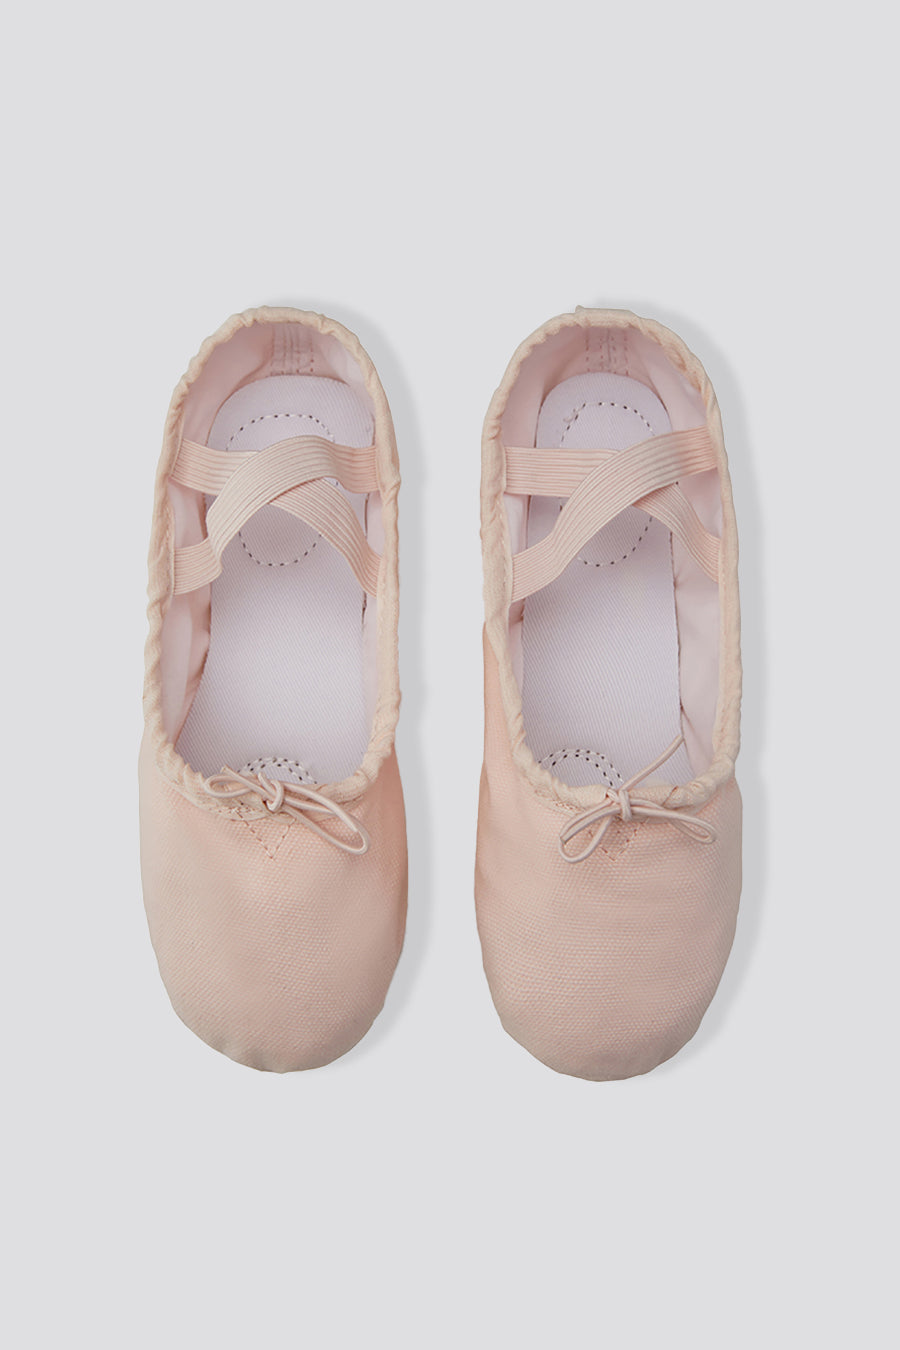 Stelle World Ballet Shoes for Girls